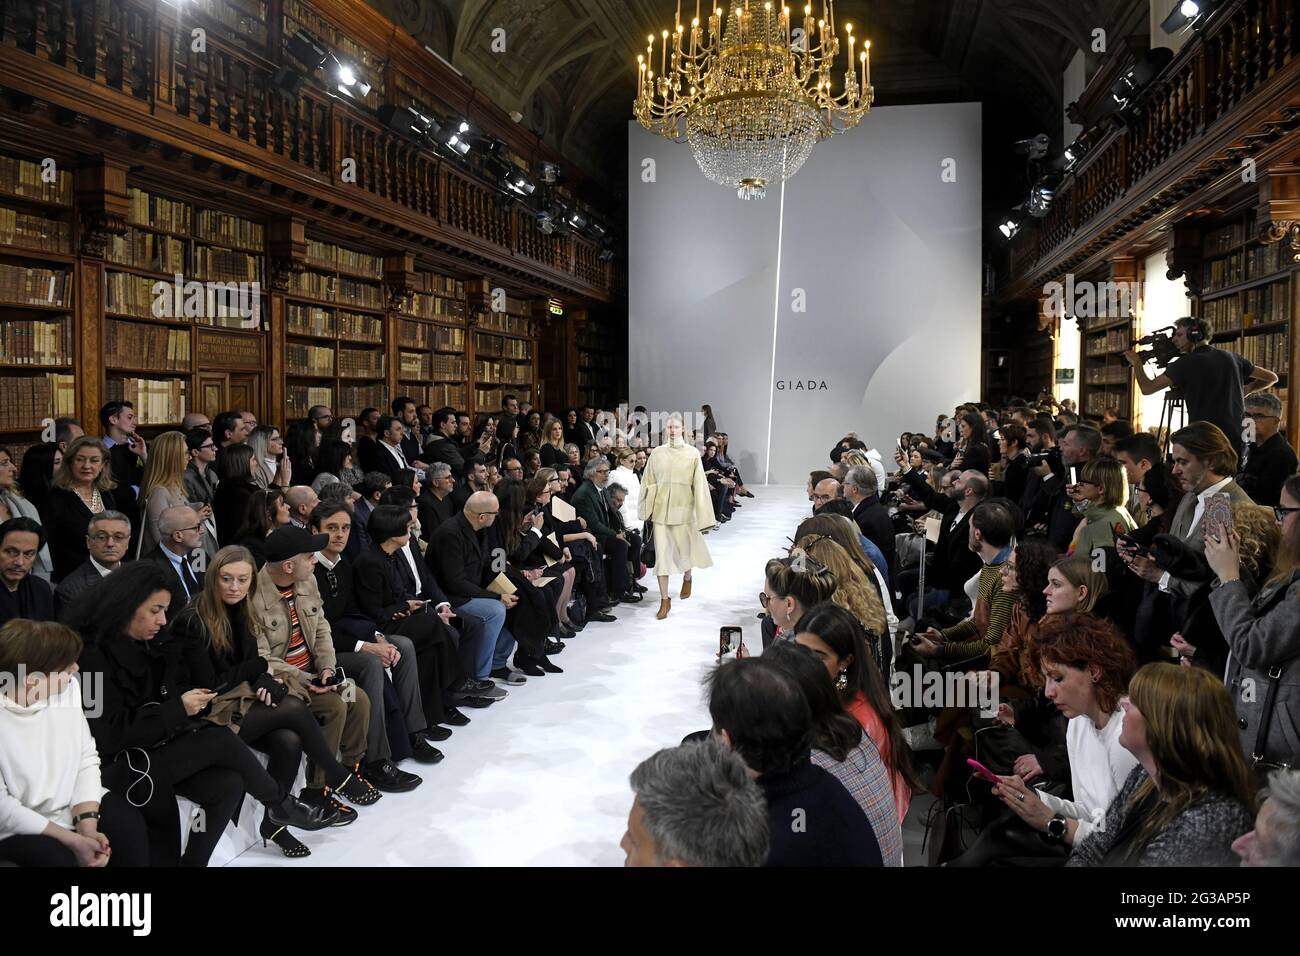 Des modèles défilent, pendant le défilé de mode automne/hiver de la Giada, à l'intérieur de la bibliothèque Braidense de la Pinacoteca de Brera, à Milan. Banque D'Images